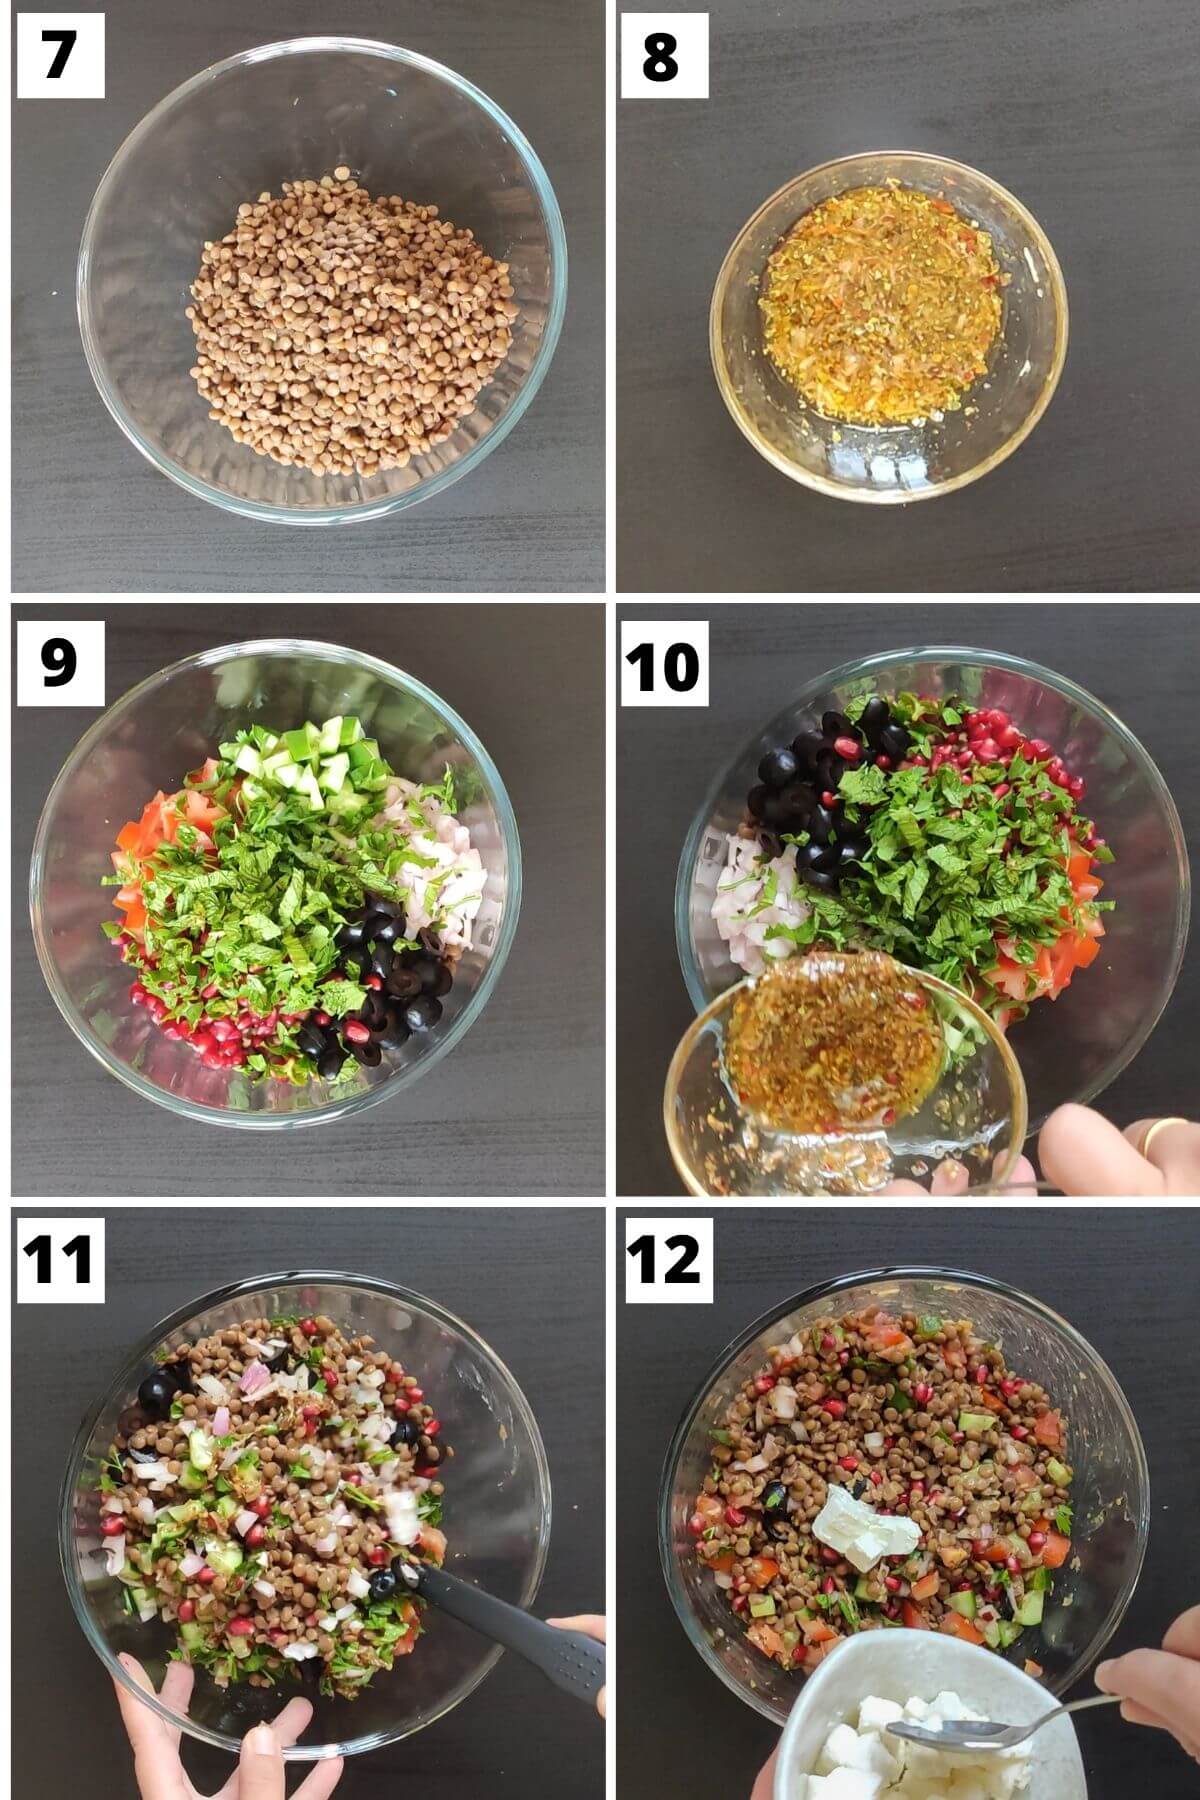 Steps to make  Mediterranean lentil salad